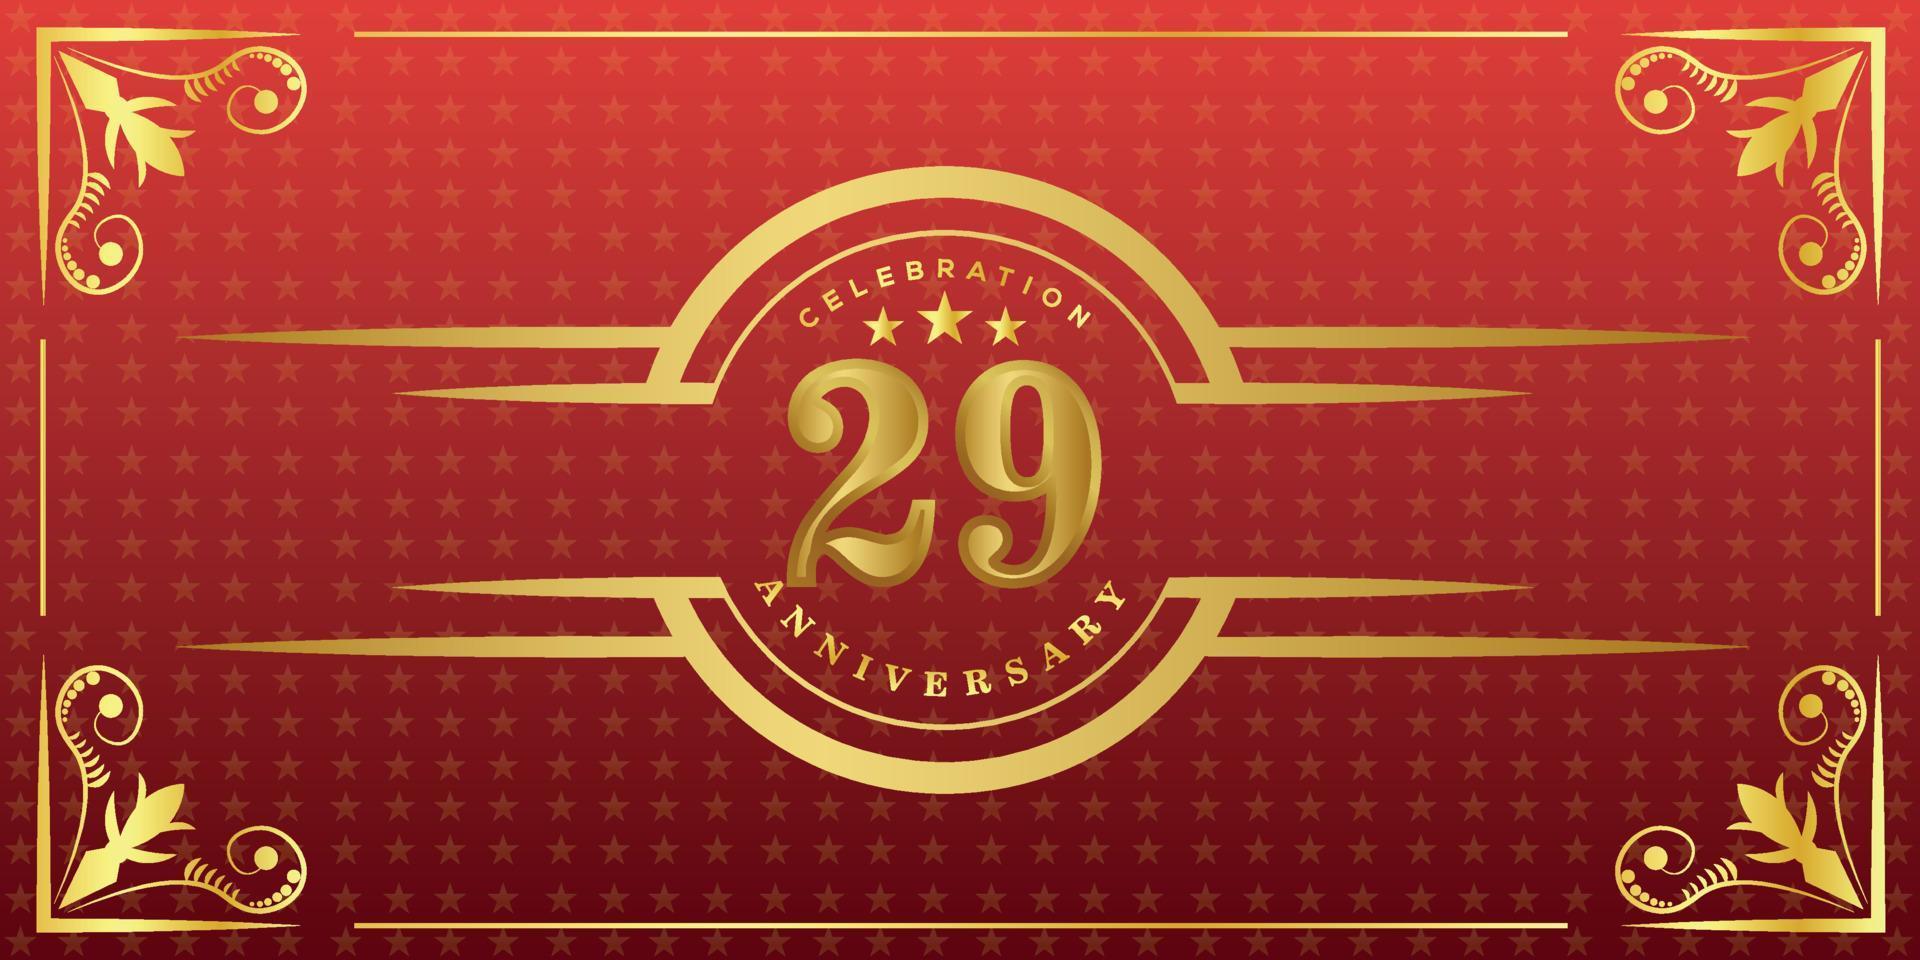 Logo du 29e anniversaire avec anneau doré, confettis et bordure dorée isolés sur fond rouge élégant, éclat, création vectorielle pour carte de voeux et carte d'invitation vecteur